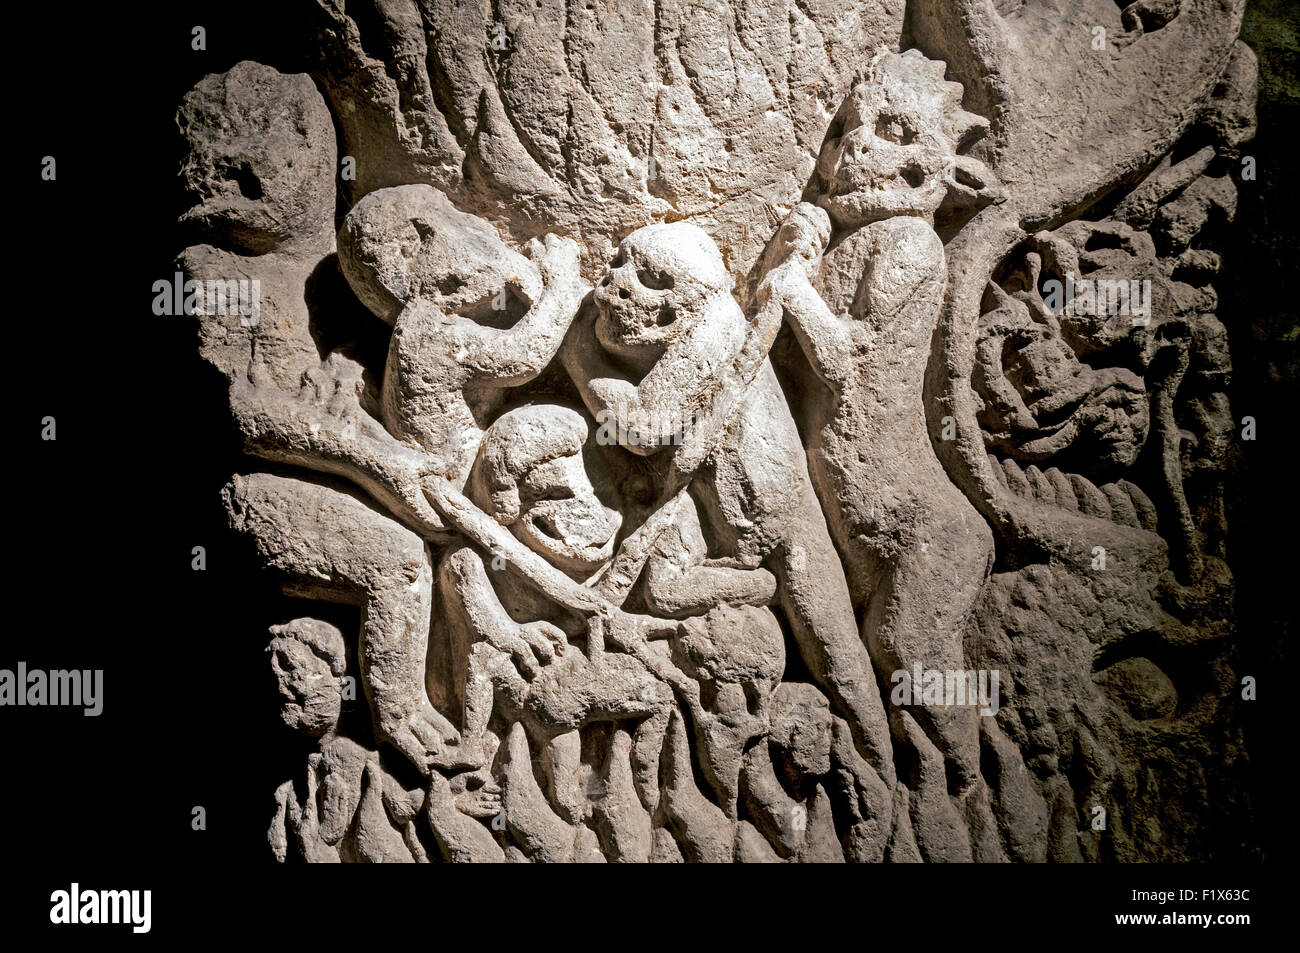 L'Doomstone dans la crypte de la cathédrale de York, ville de York, Yorkshire, Angleterre, Royaume-Uni Banque D'Images